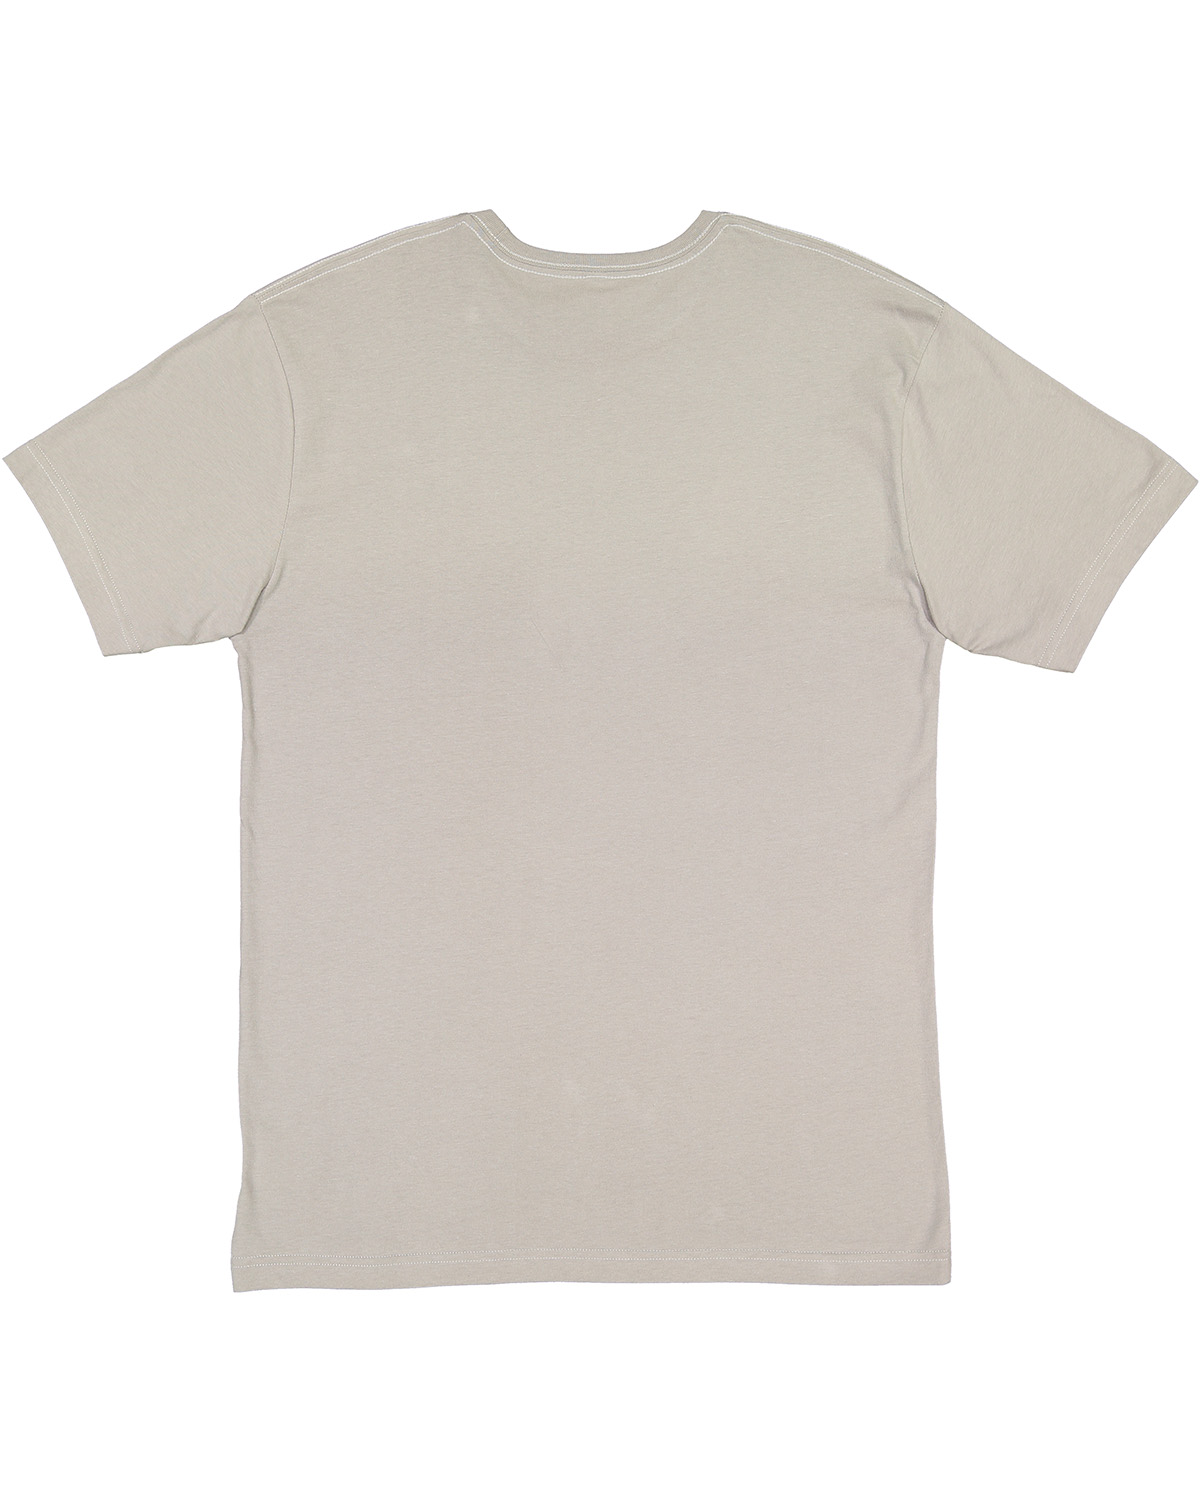 LAT 6101 Titanium Youth Fine Jersey T-Shirt | JiffyShirts